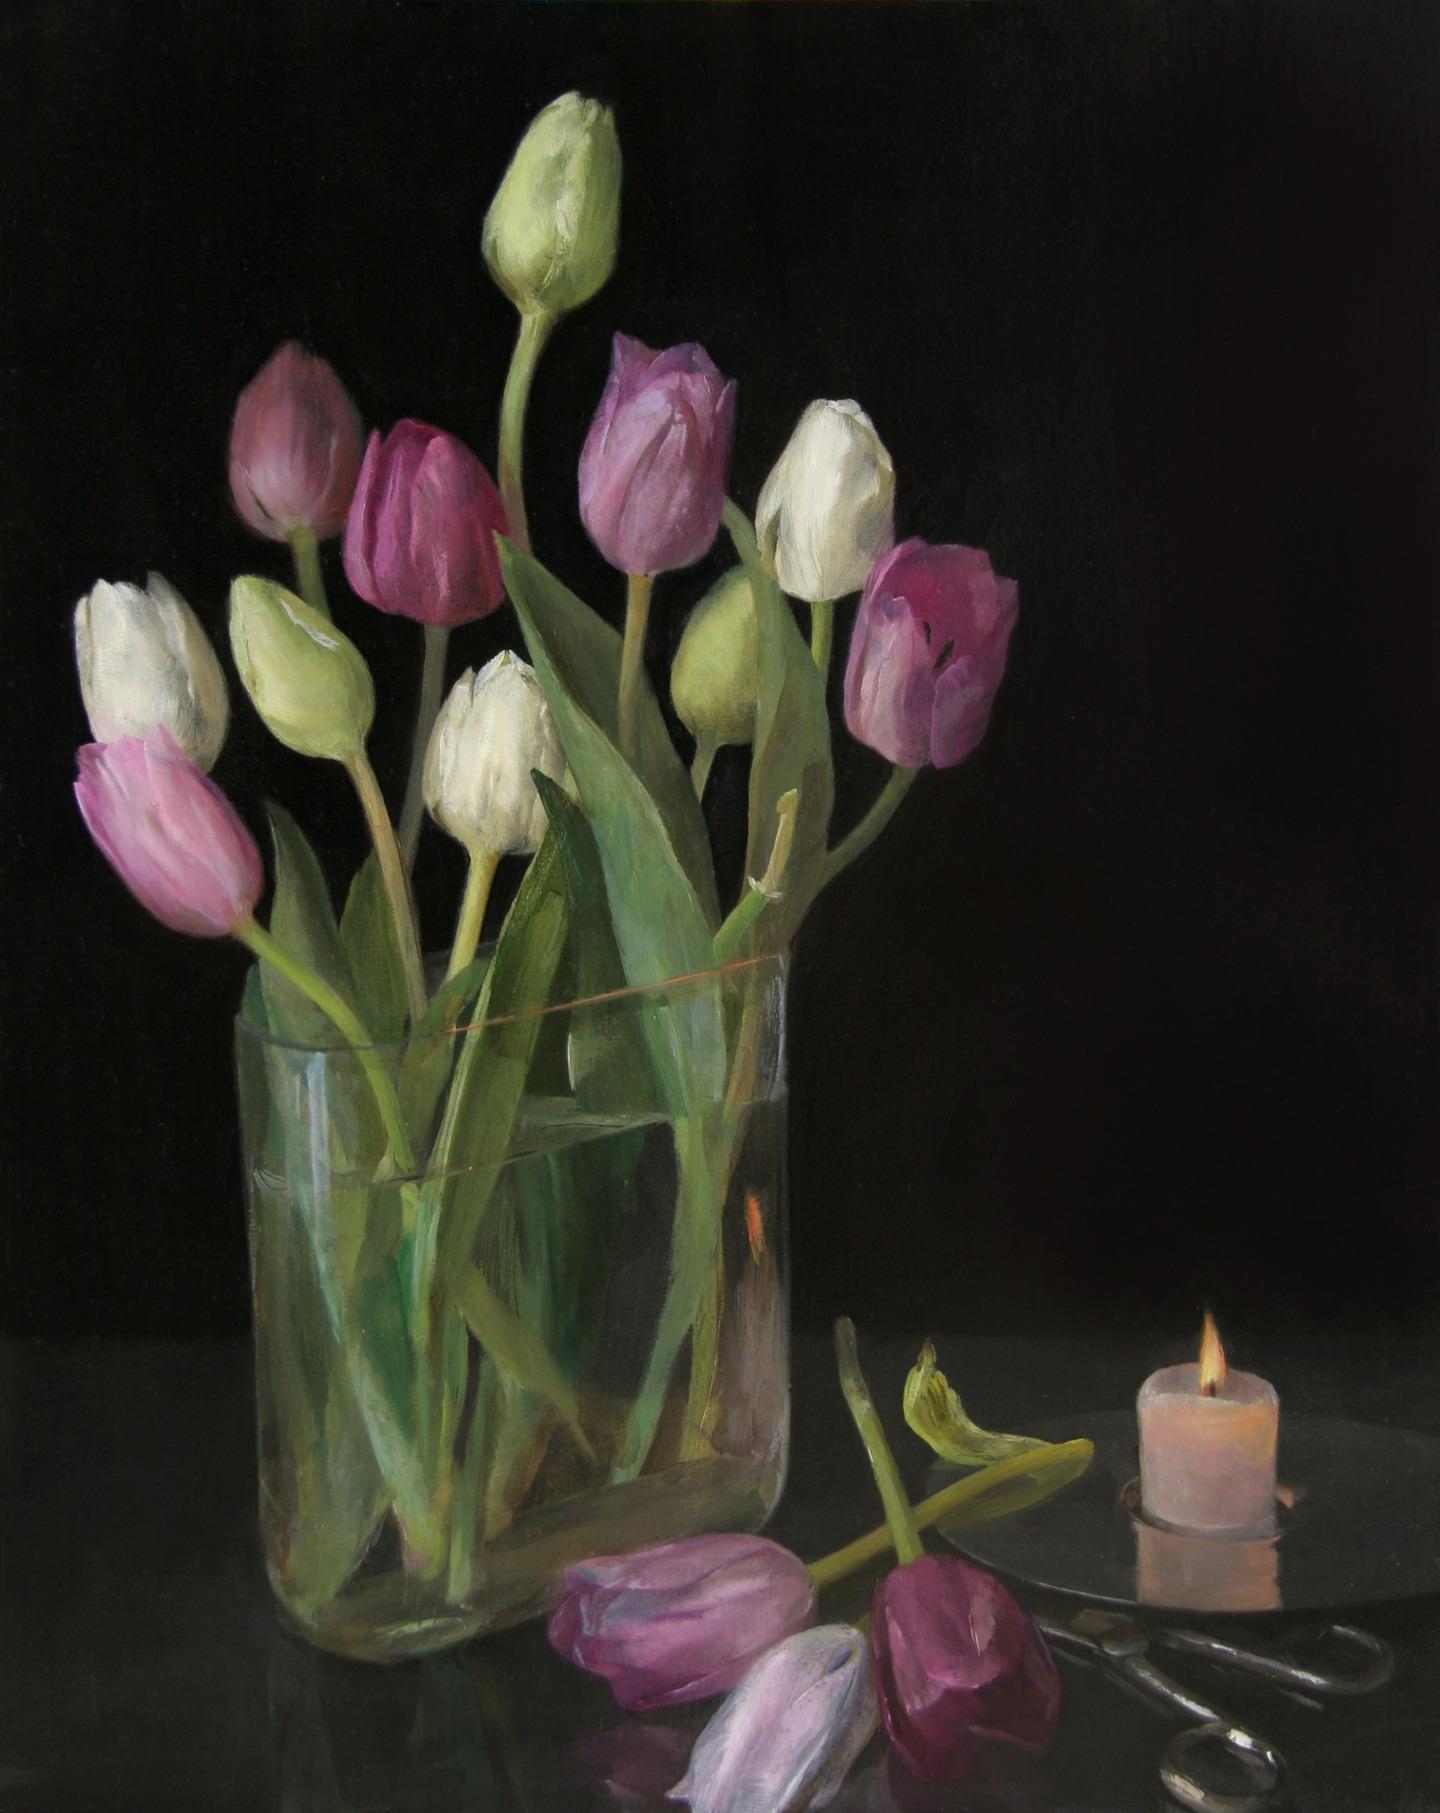 Nature morte aux tulipes, vase en verre de tulipes pastel, ciseaux et bougie allumée